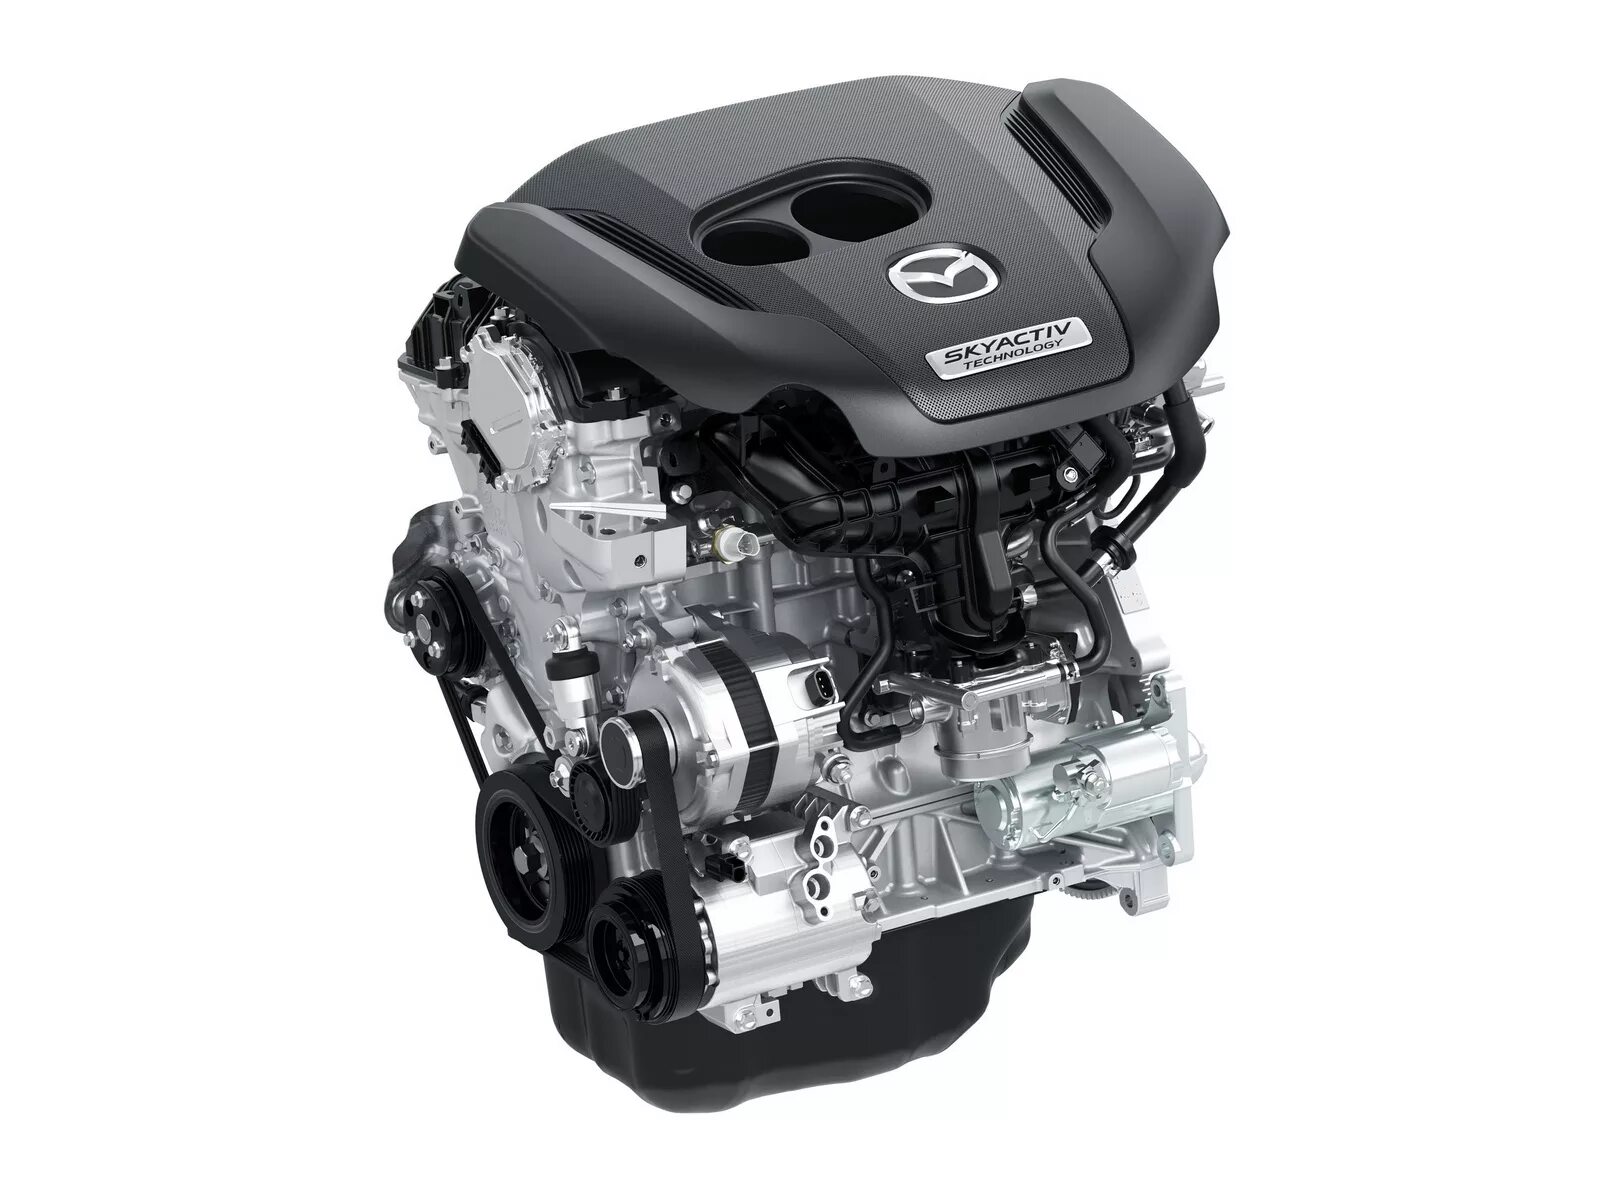 Двигатель мазда сх5 2.0. Двигатель Mazda CX-5 2.0 SKYACTIV. Mazda SKYACTIV-G 2.0 двигатель. Двигатель Мазда СХ 9 2.5 турбо. Двигатель Мазда cx5 2.5.